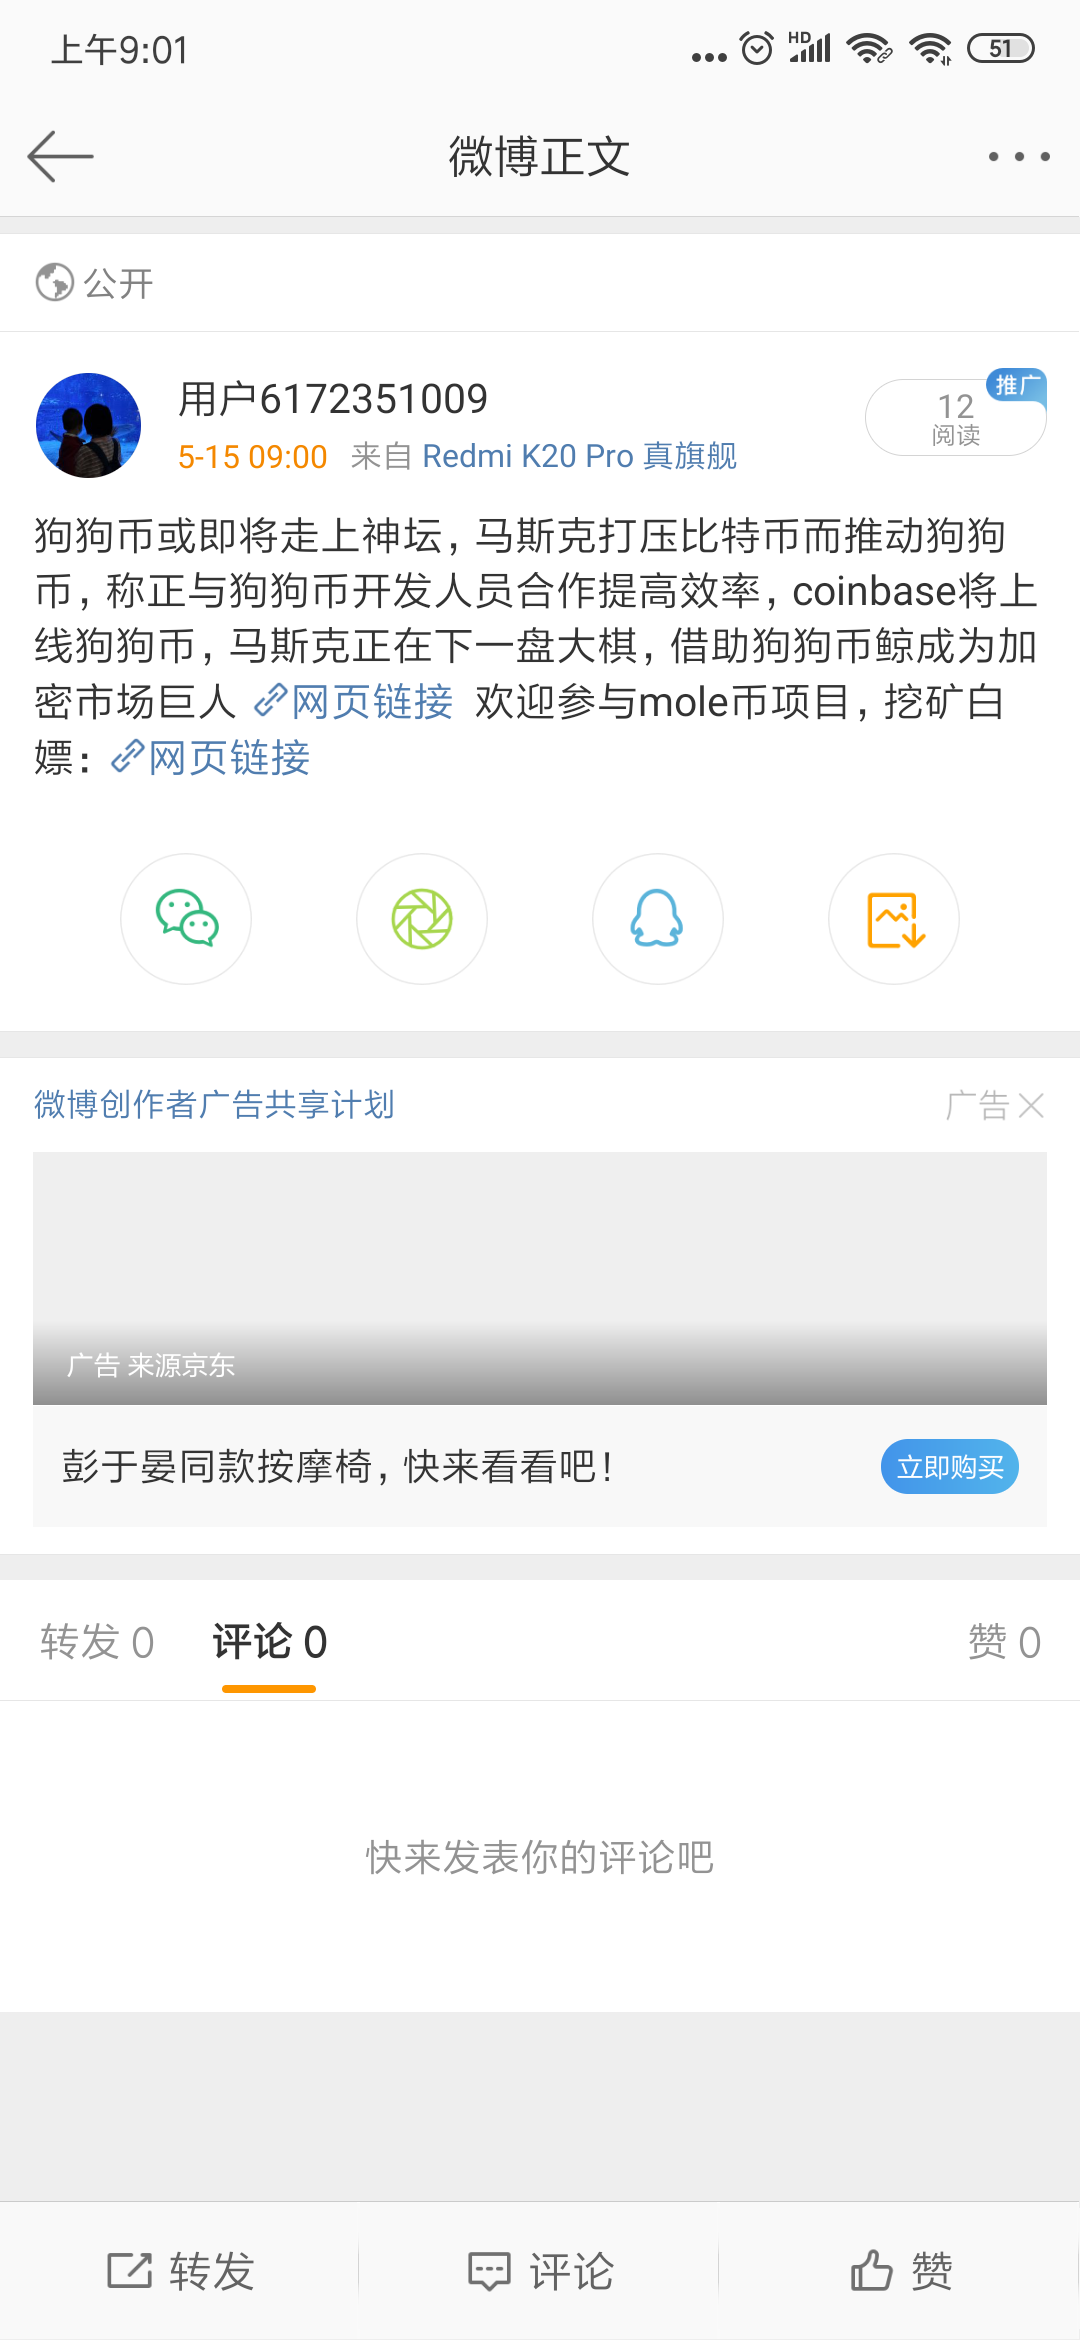 Screenshot_2021-05-15-09-01-59-515_com.sina.weibo.png